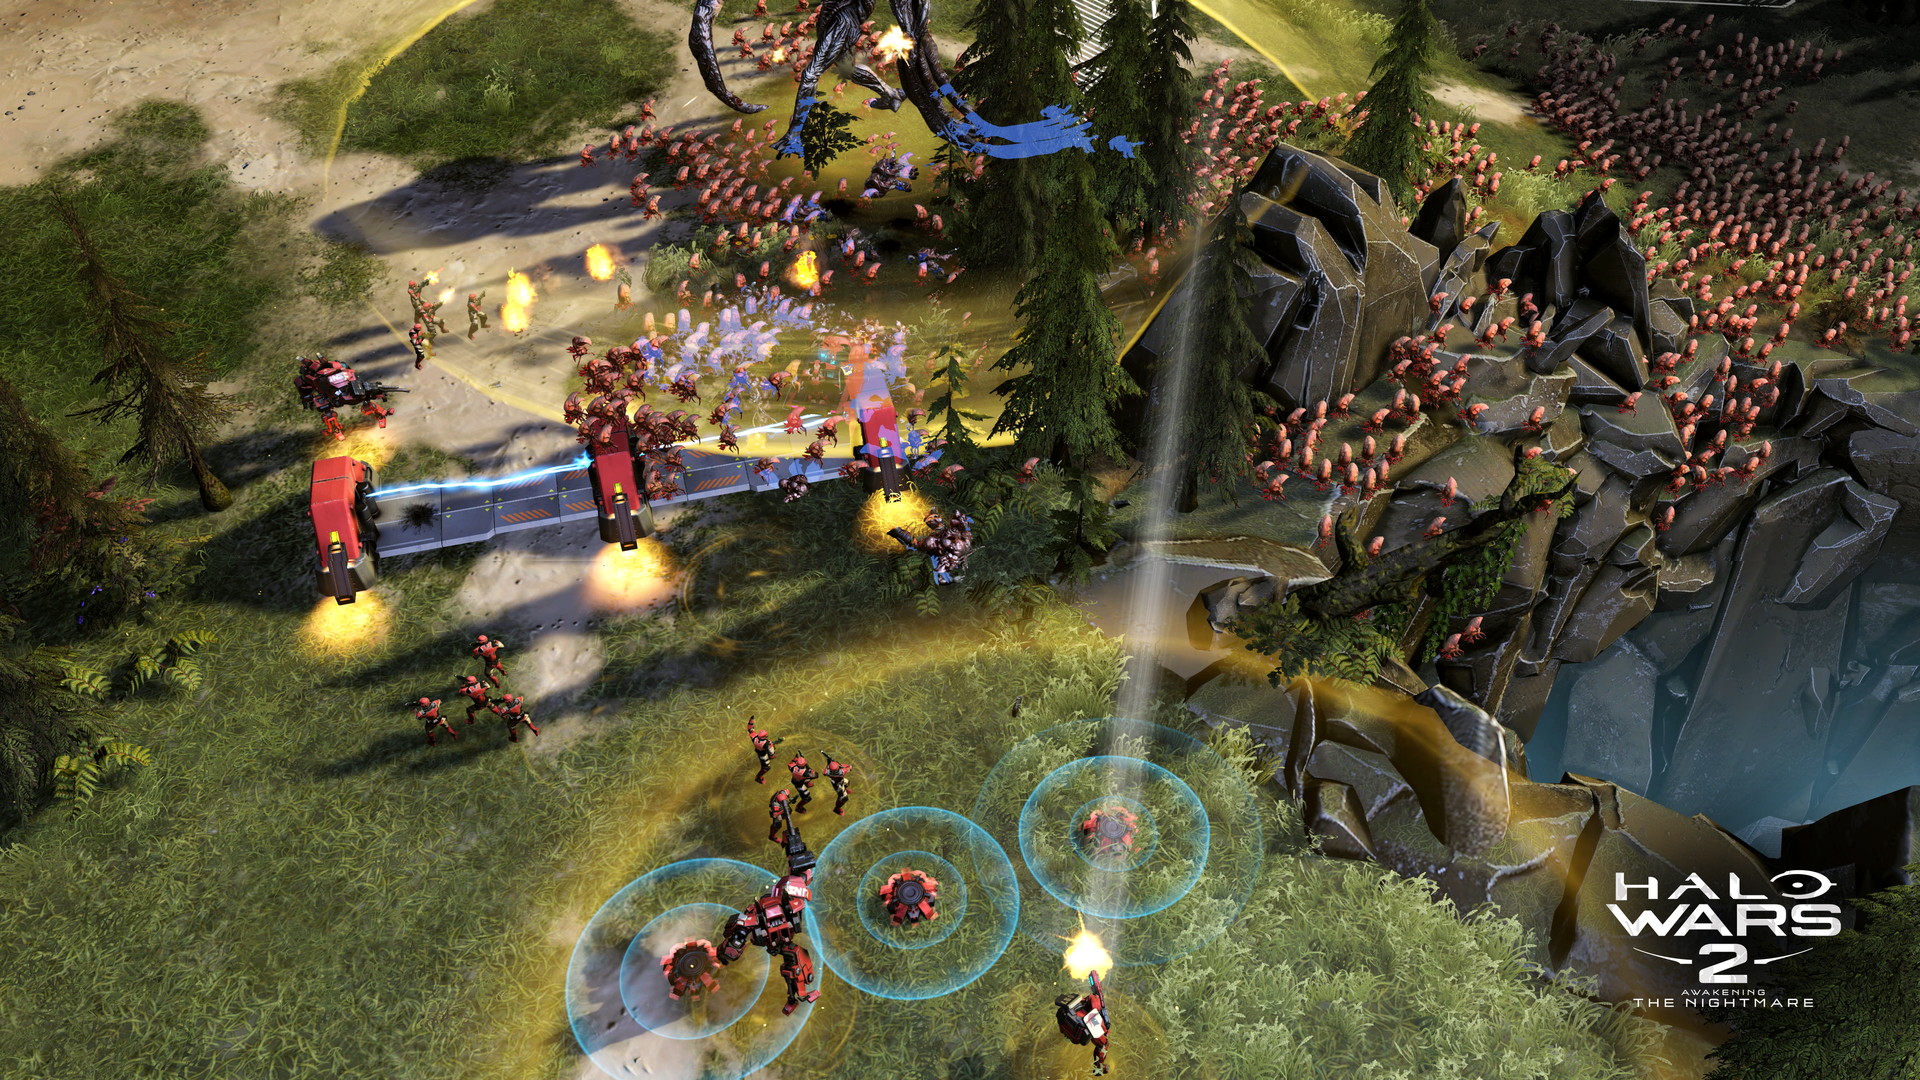 Halo Wars 2: Awakening the Nightmare - screenshot 1